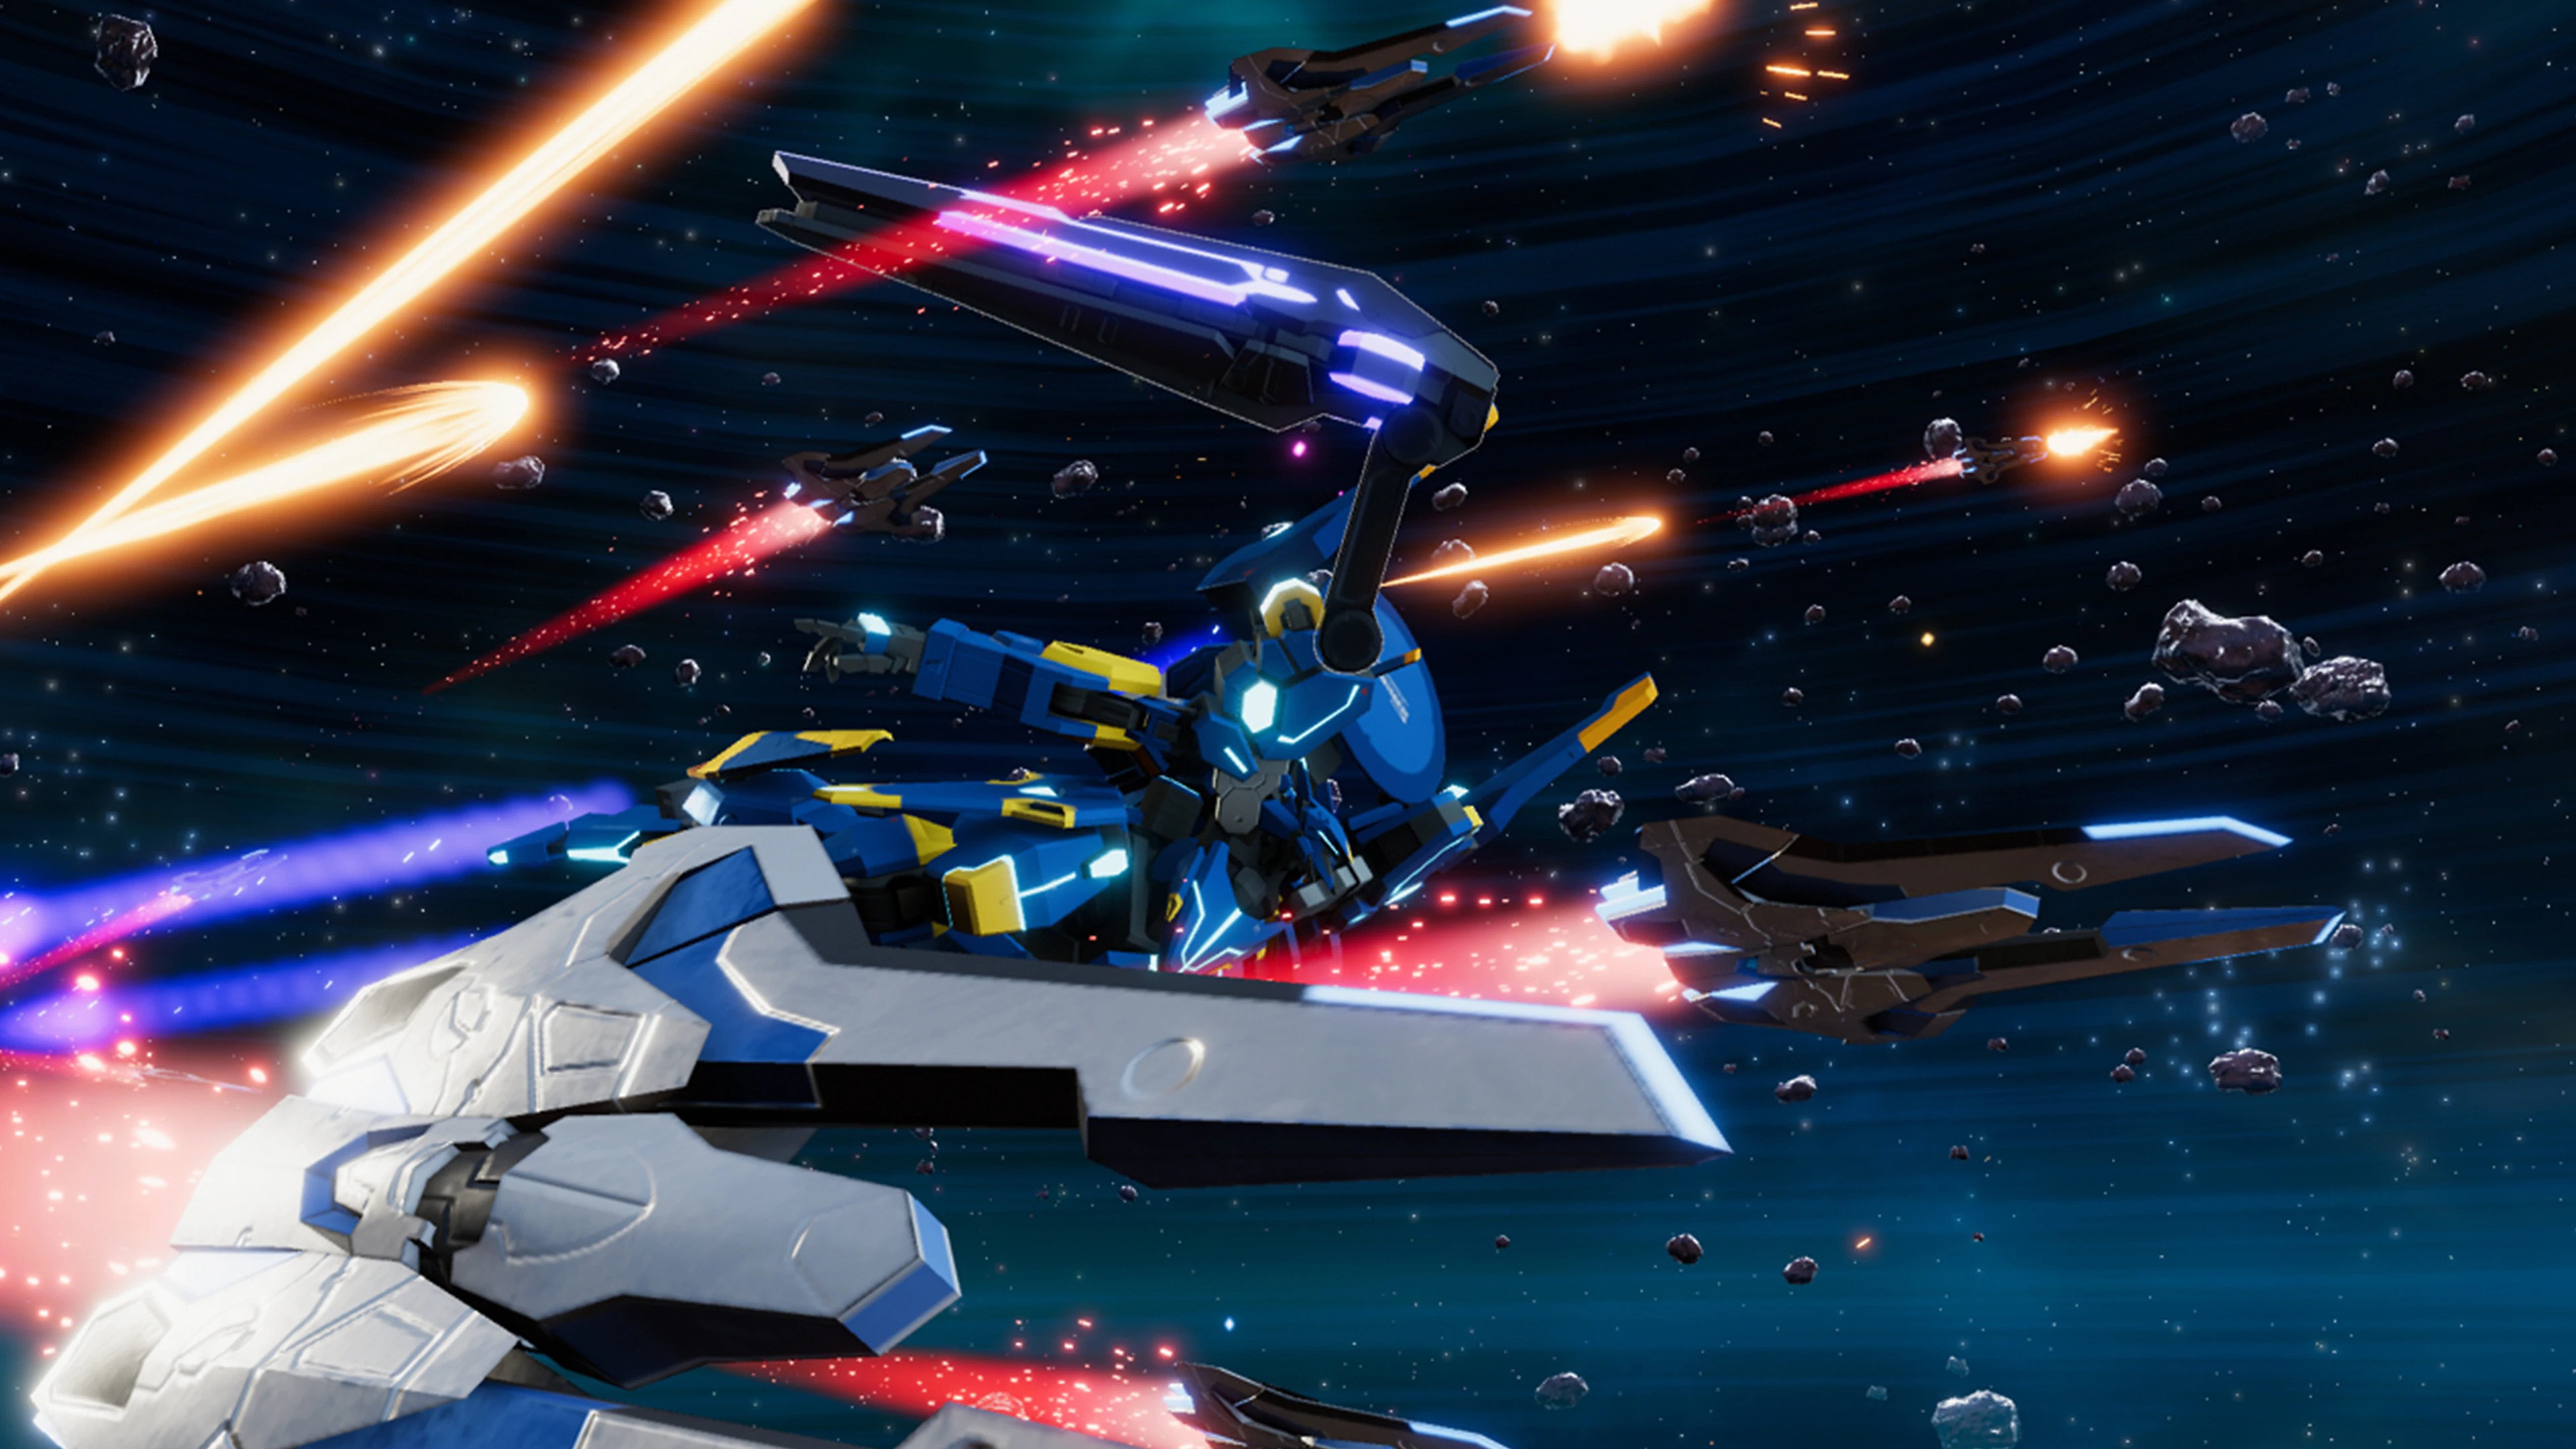 Relayer - Captura de tela exibindo um robô gigante voando pelo espaço ao lado de várias naves espaciais